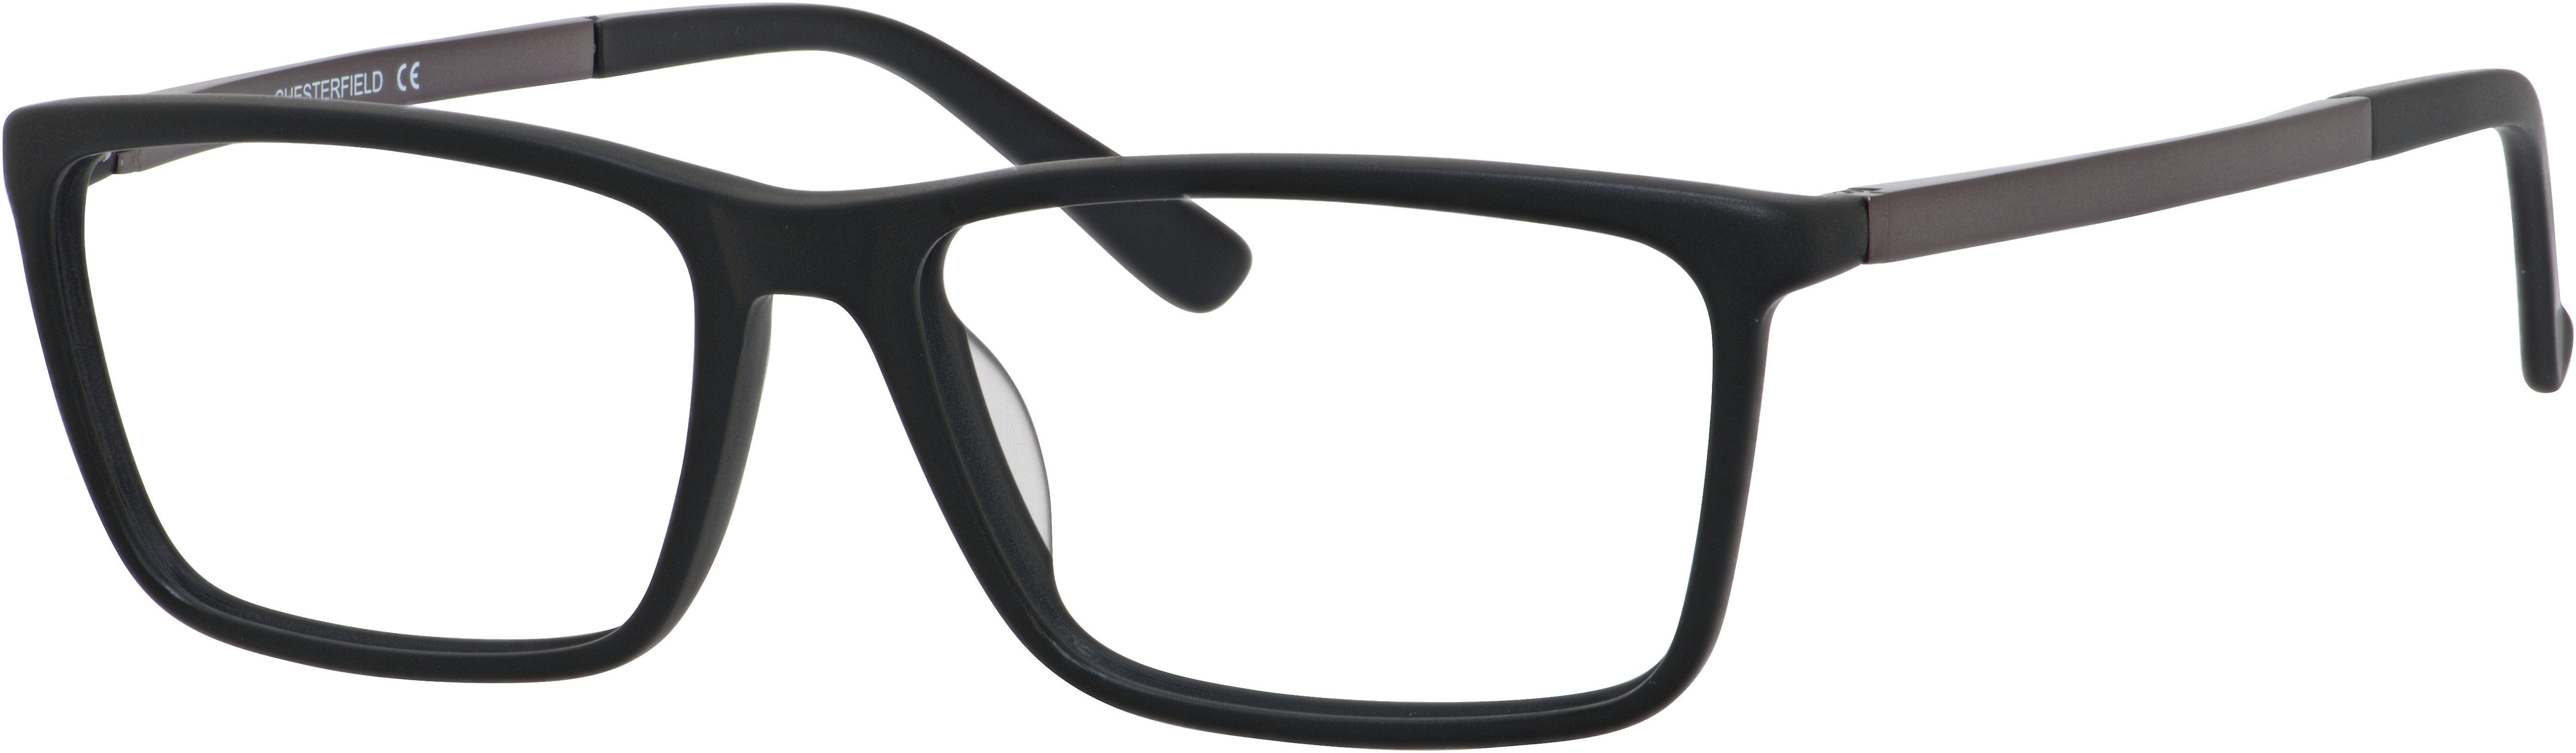  Chesterfield 54XL Rectangular Eyeglasses 0003-0003  Matte Black (00 Demo Lens)